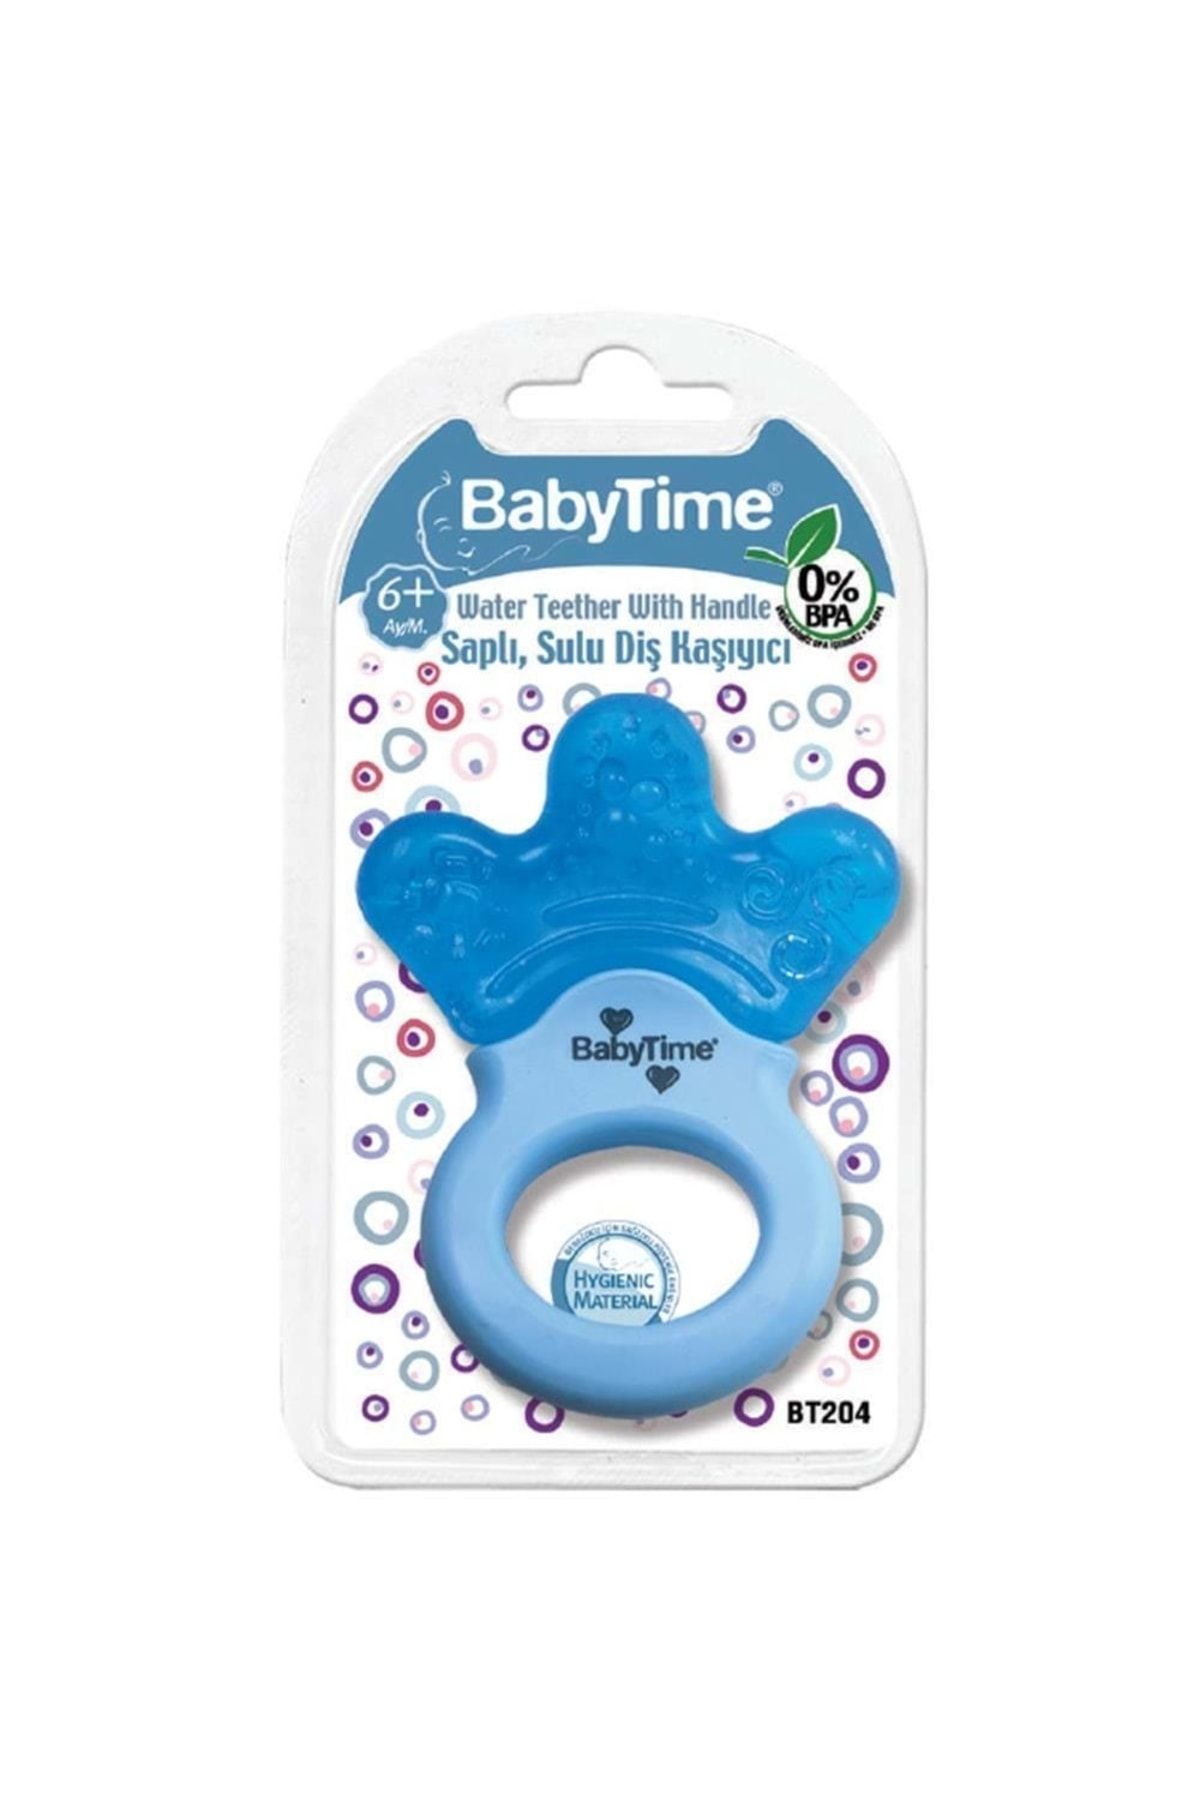 Babytime Saplı Sulu Diş Kaşıyıcı